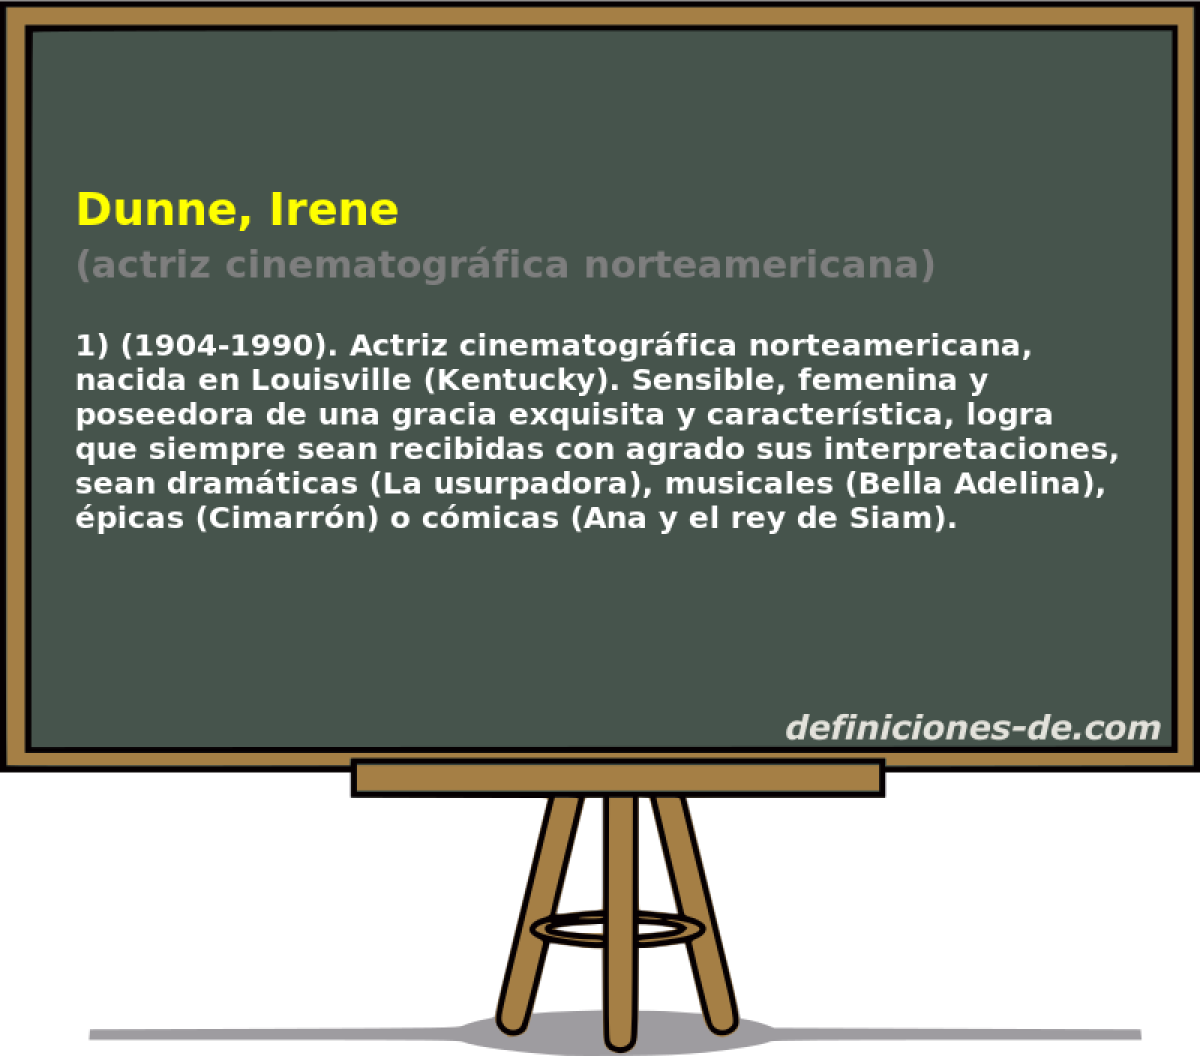 Dunne, Irene (actriz cinematogrfica norteamericana)